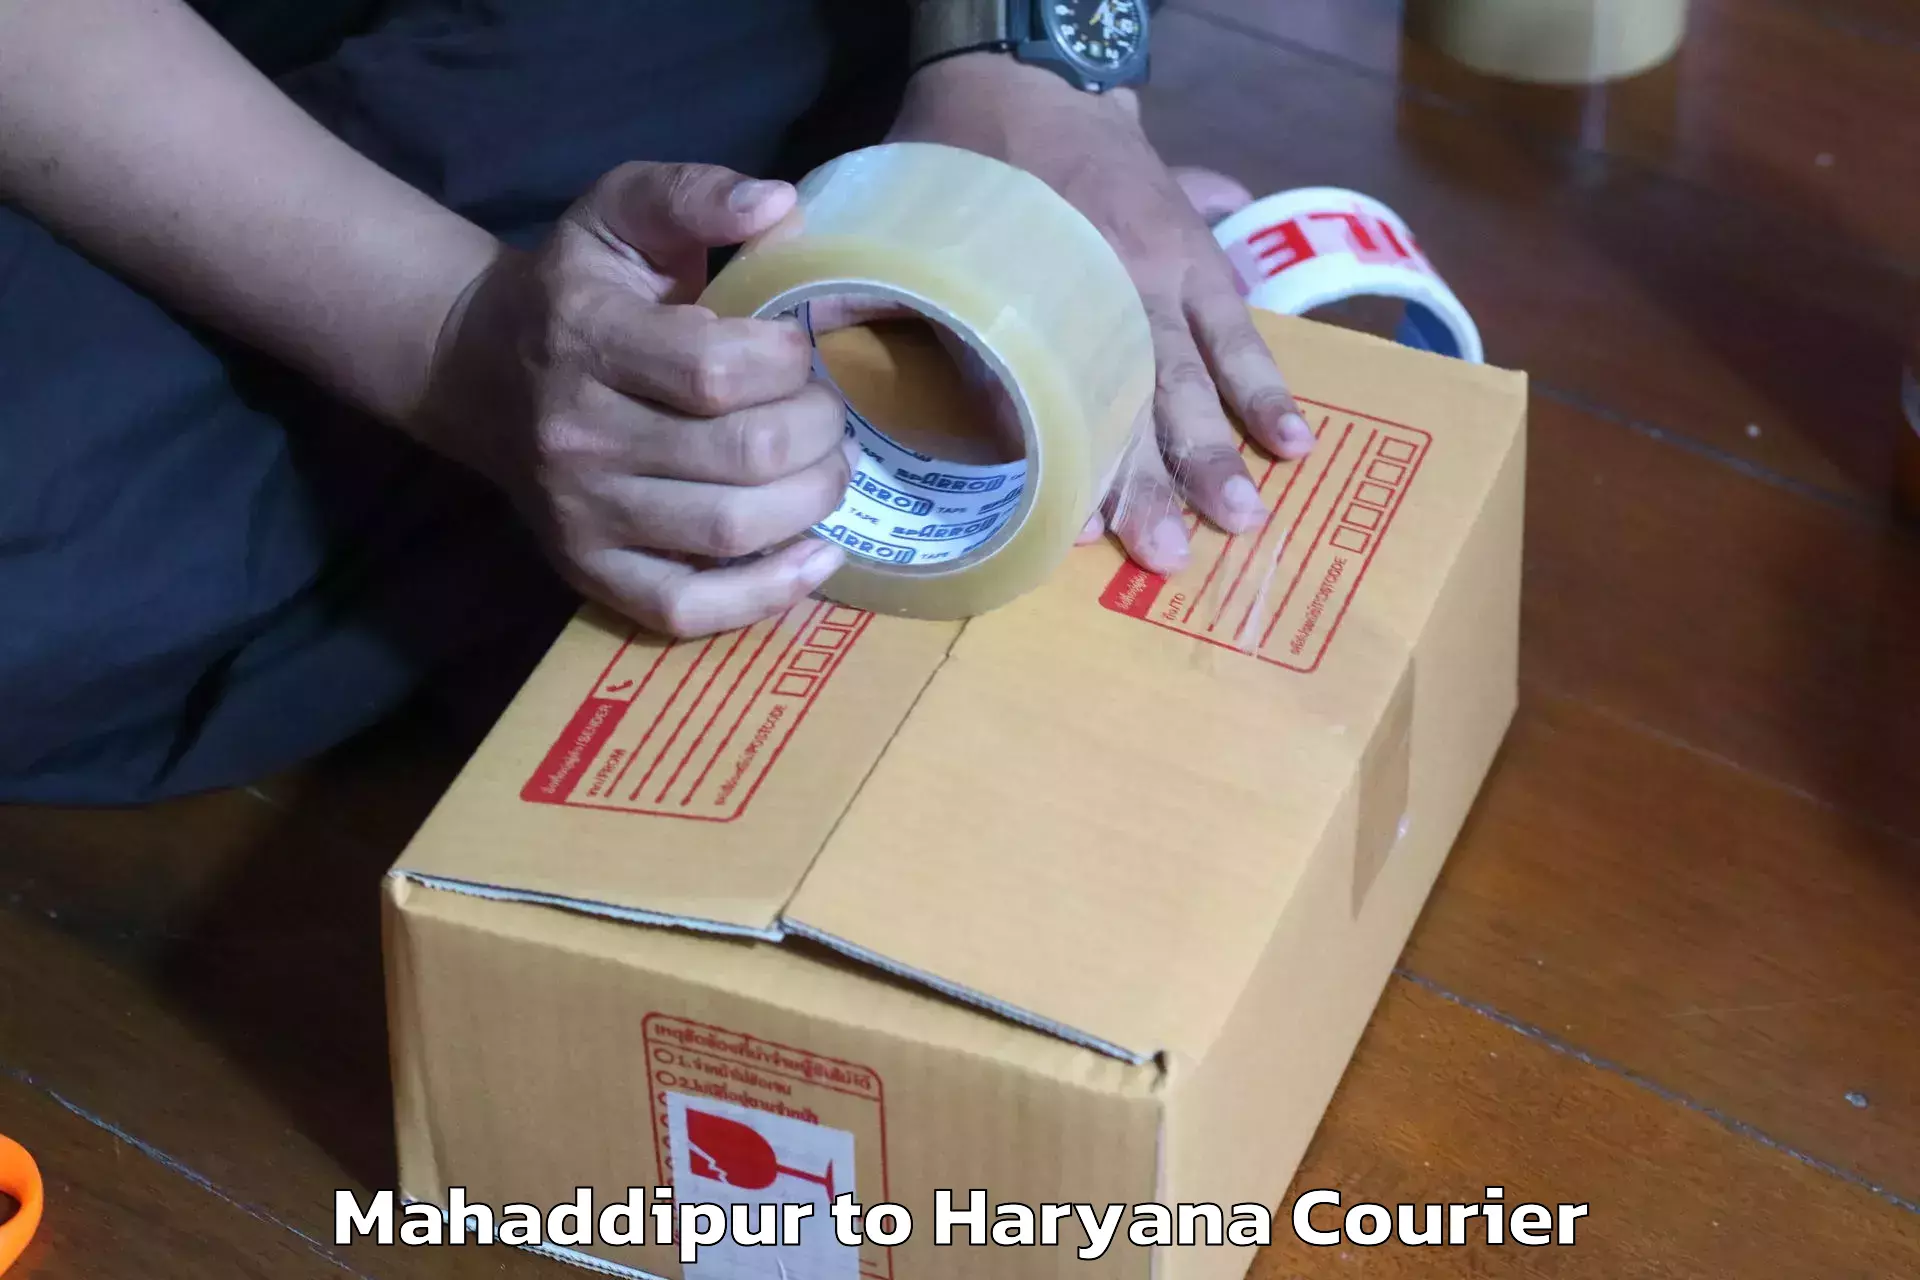 Furniture logistics in Mahaddipur to Nuh